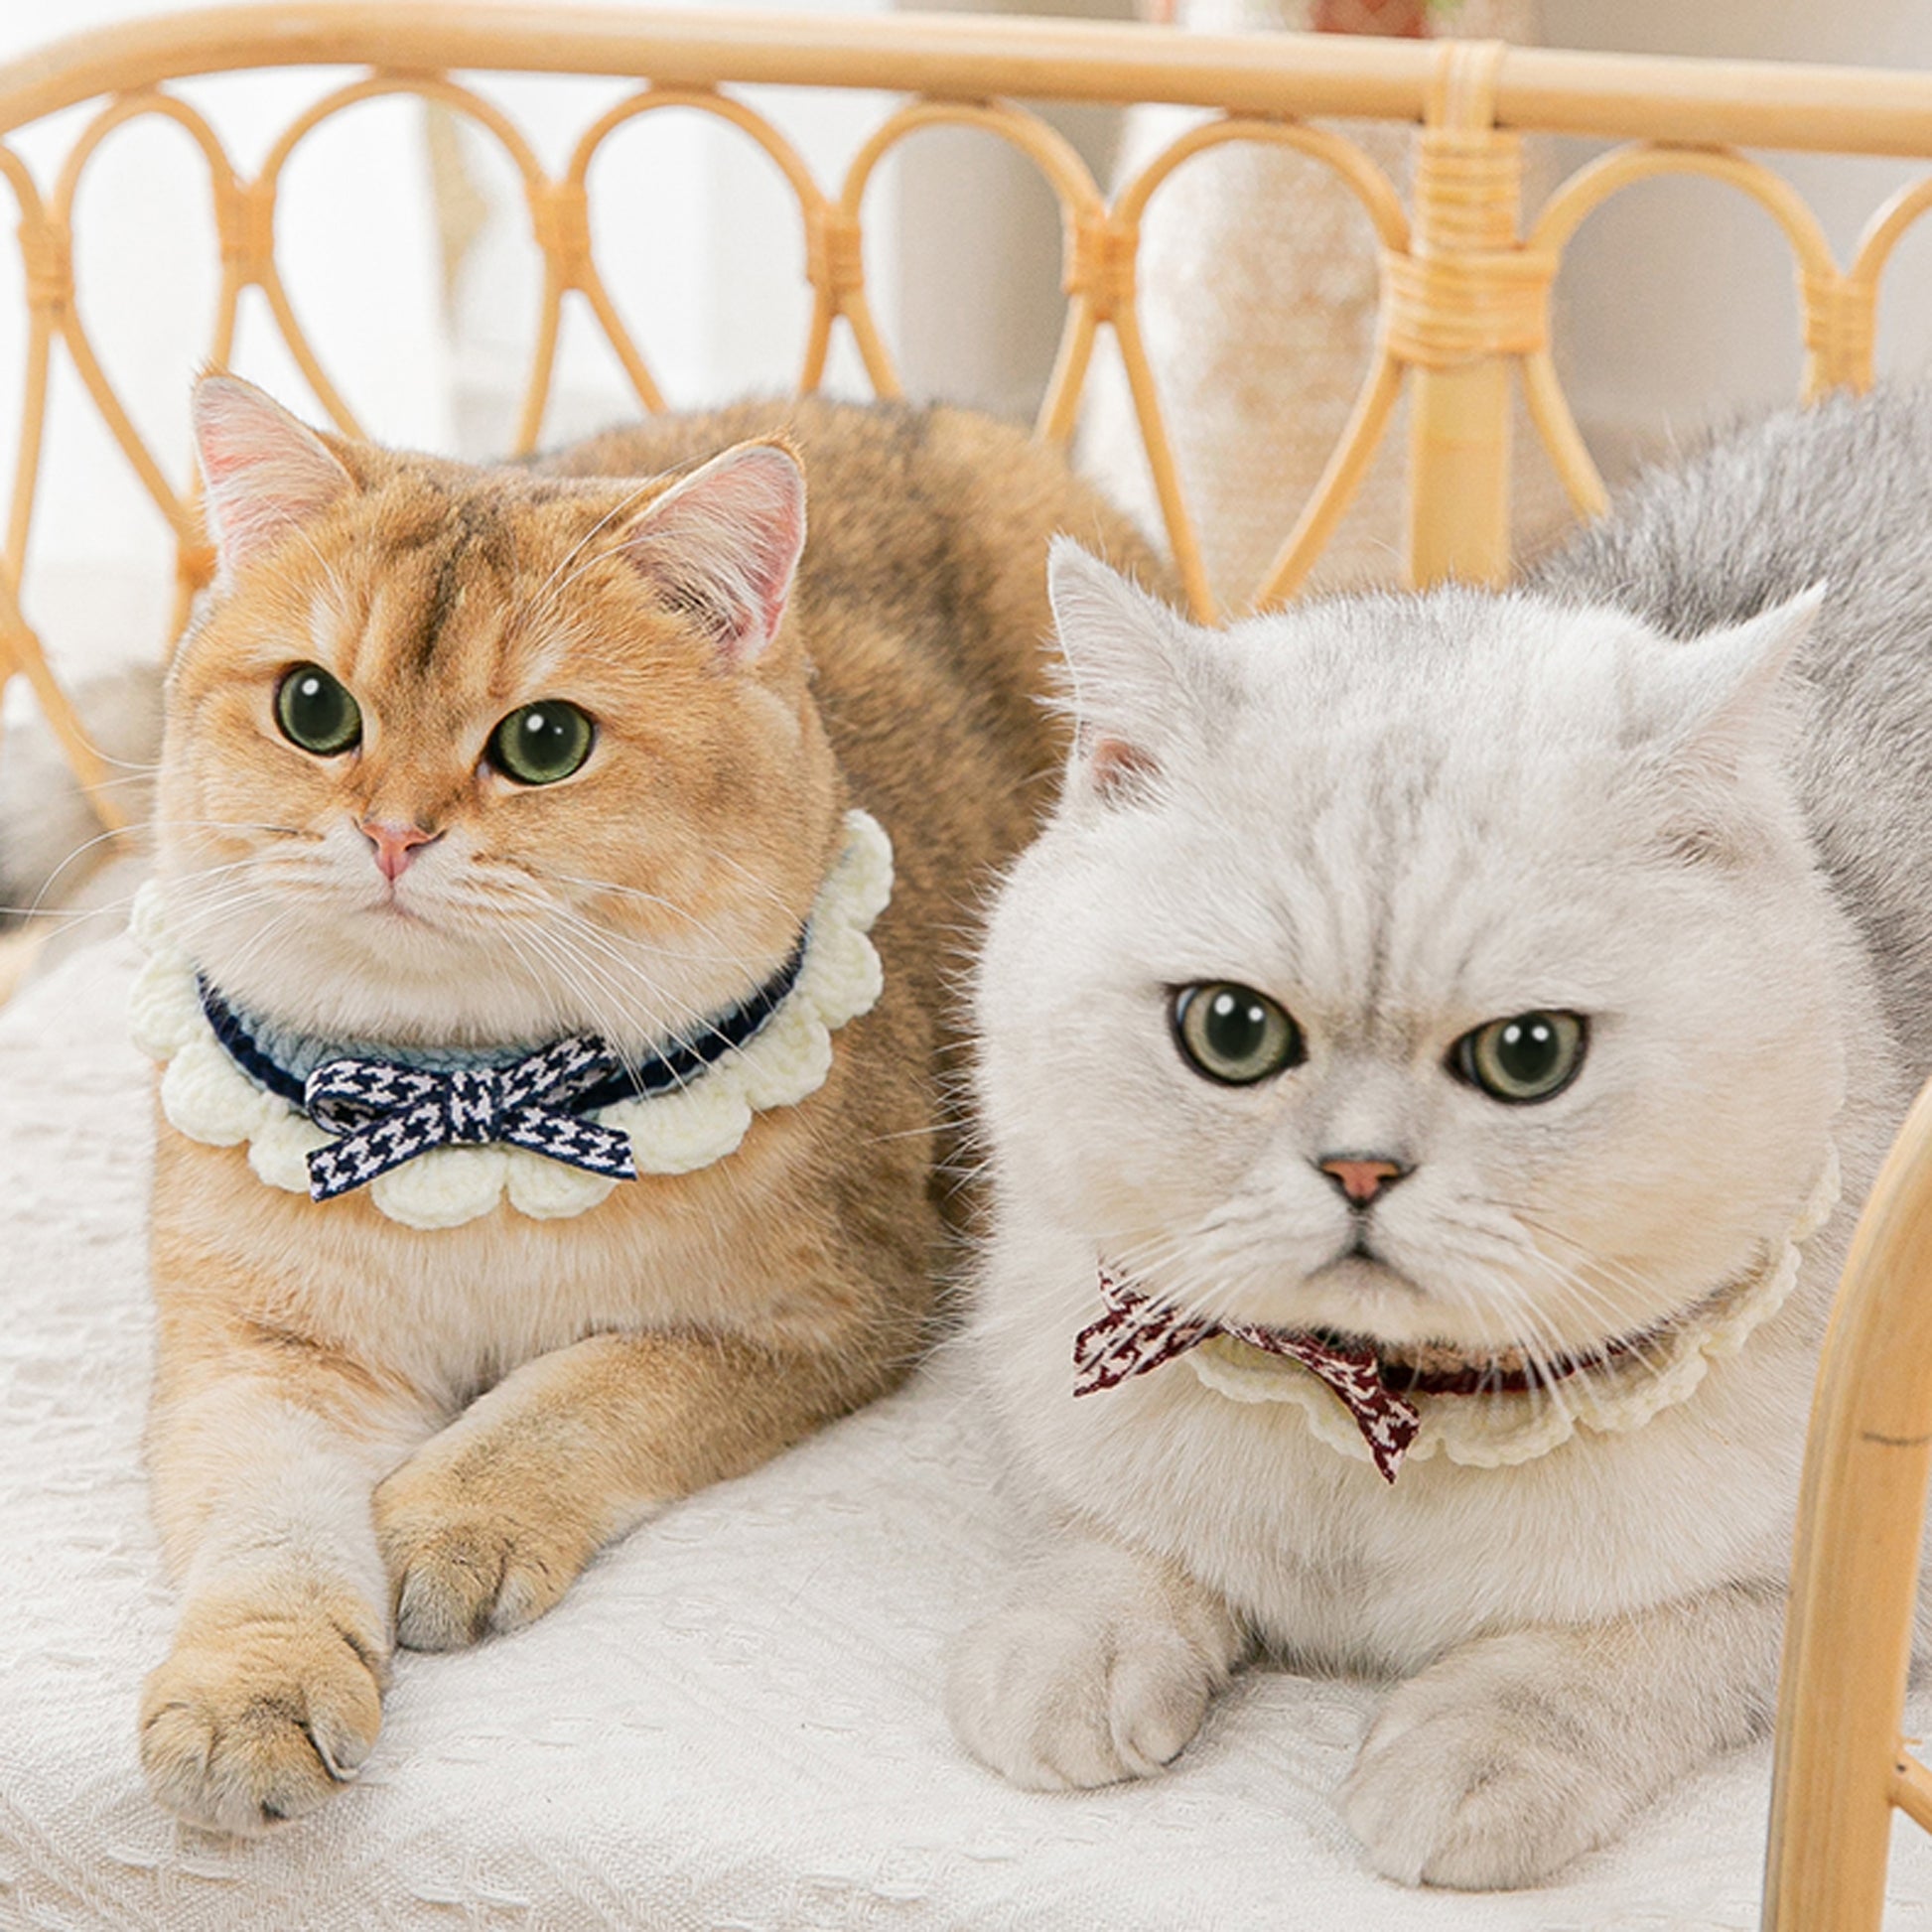 Lovely Crochet Pet Collar Cat Dog Neckwear.